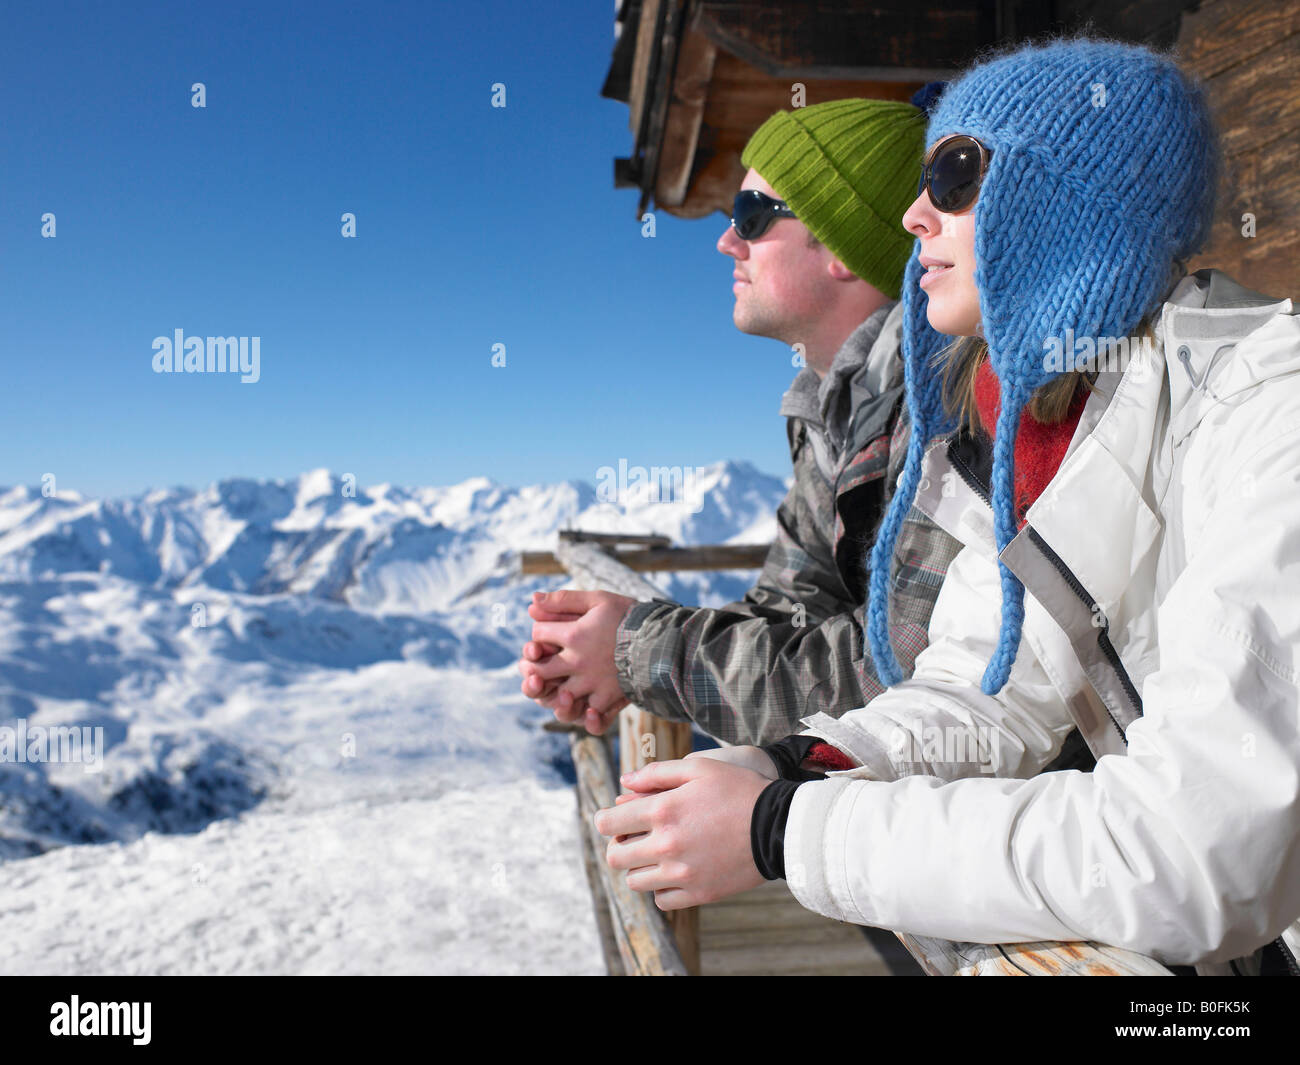 Couple admiring mountain view Stock Photo